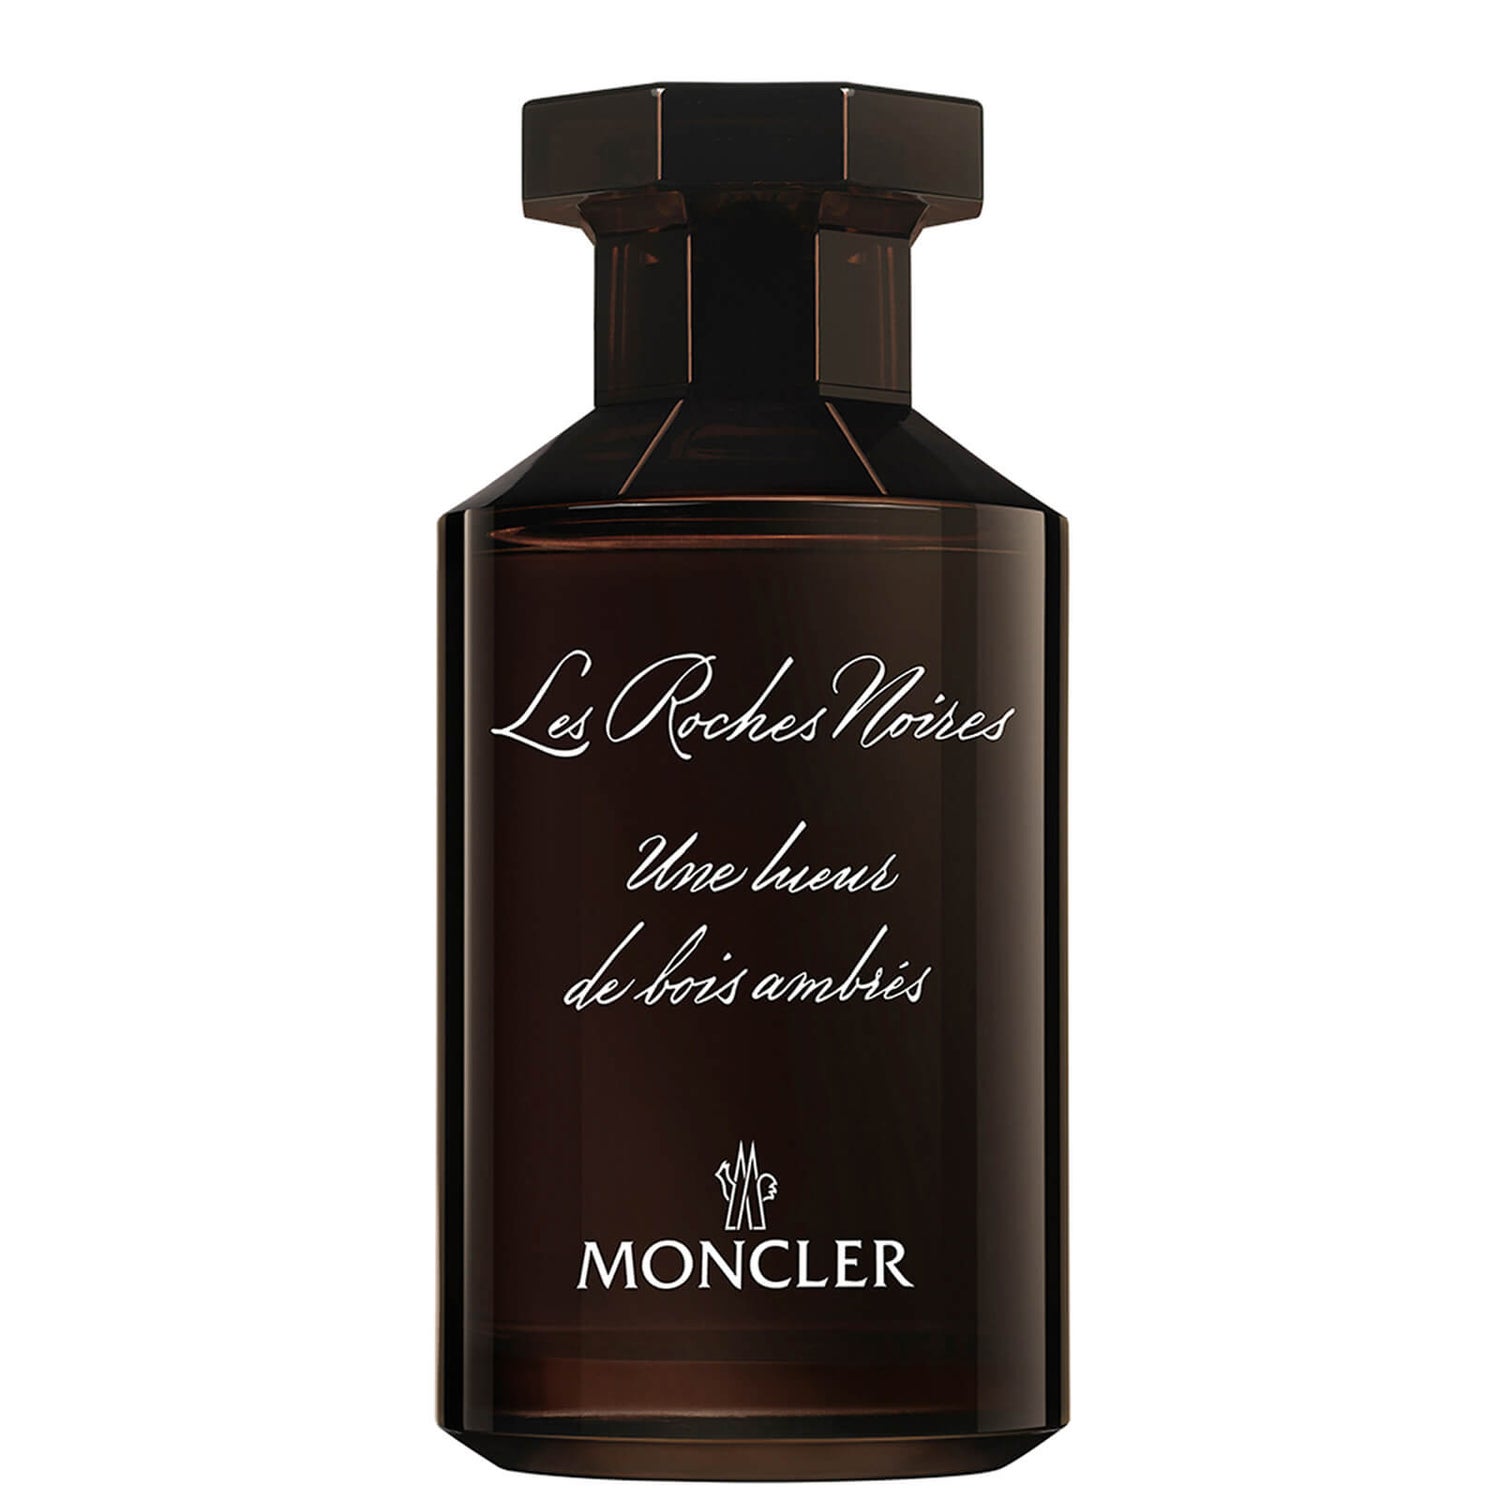 Moncler Les Sommets Collection Les Roches Noires Eau de Parfum 100ml ...